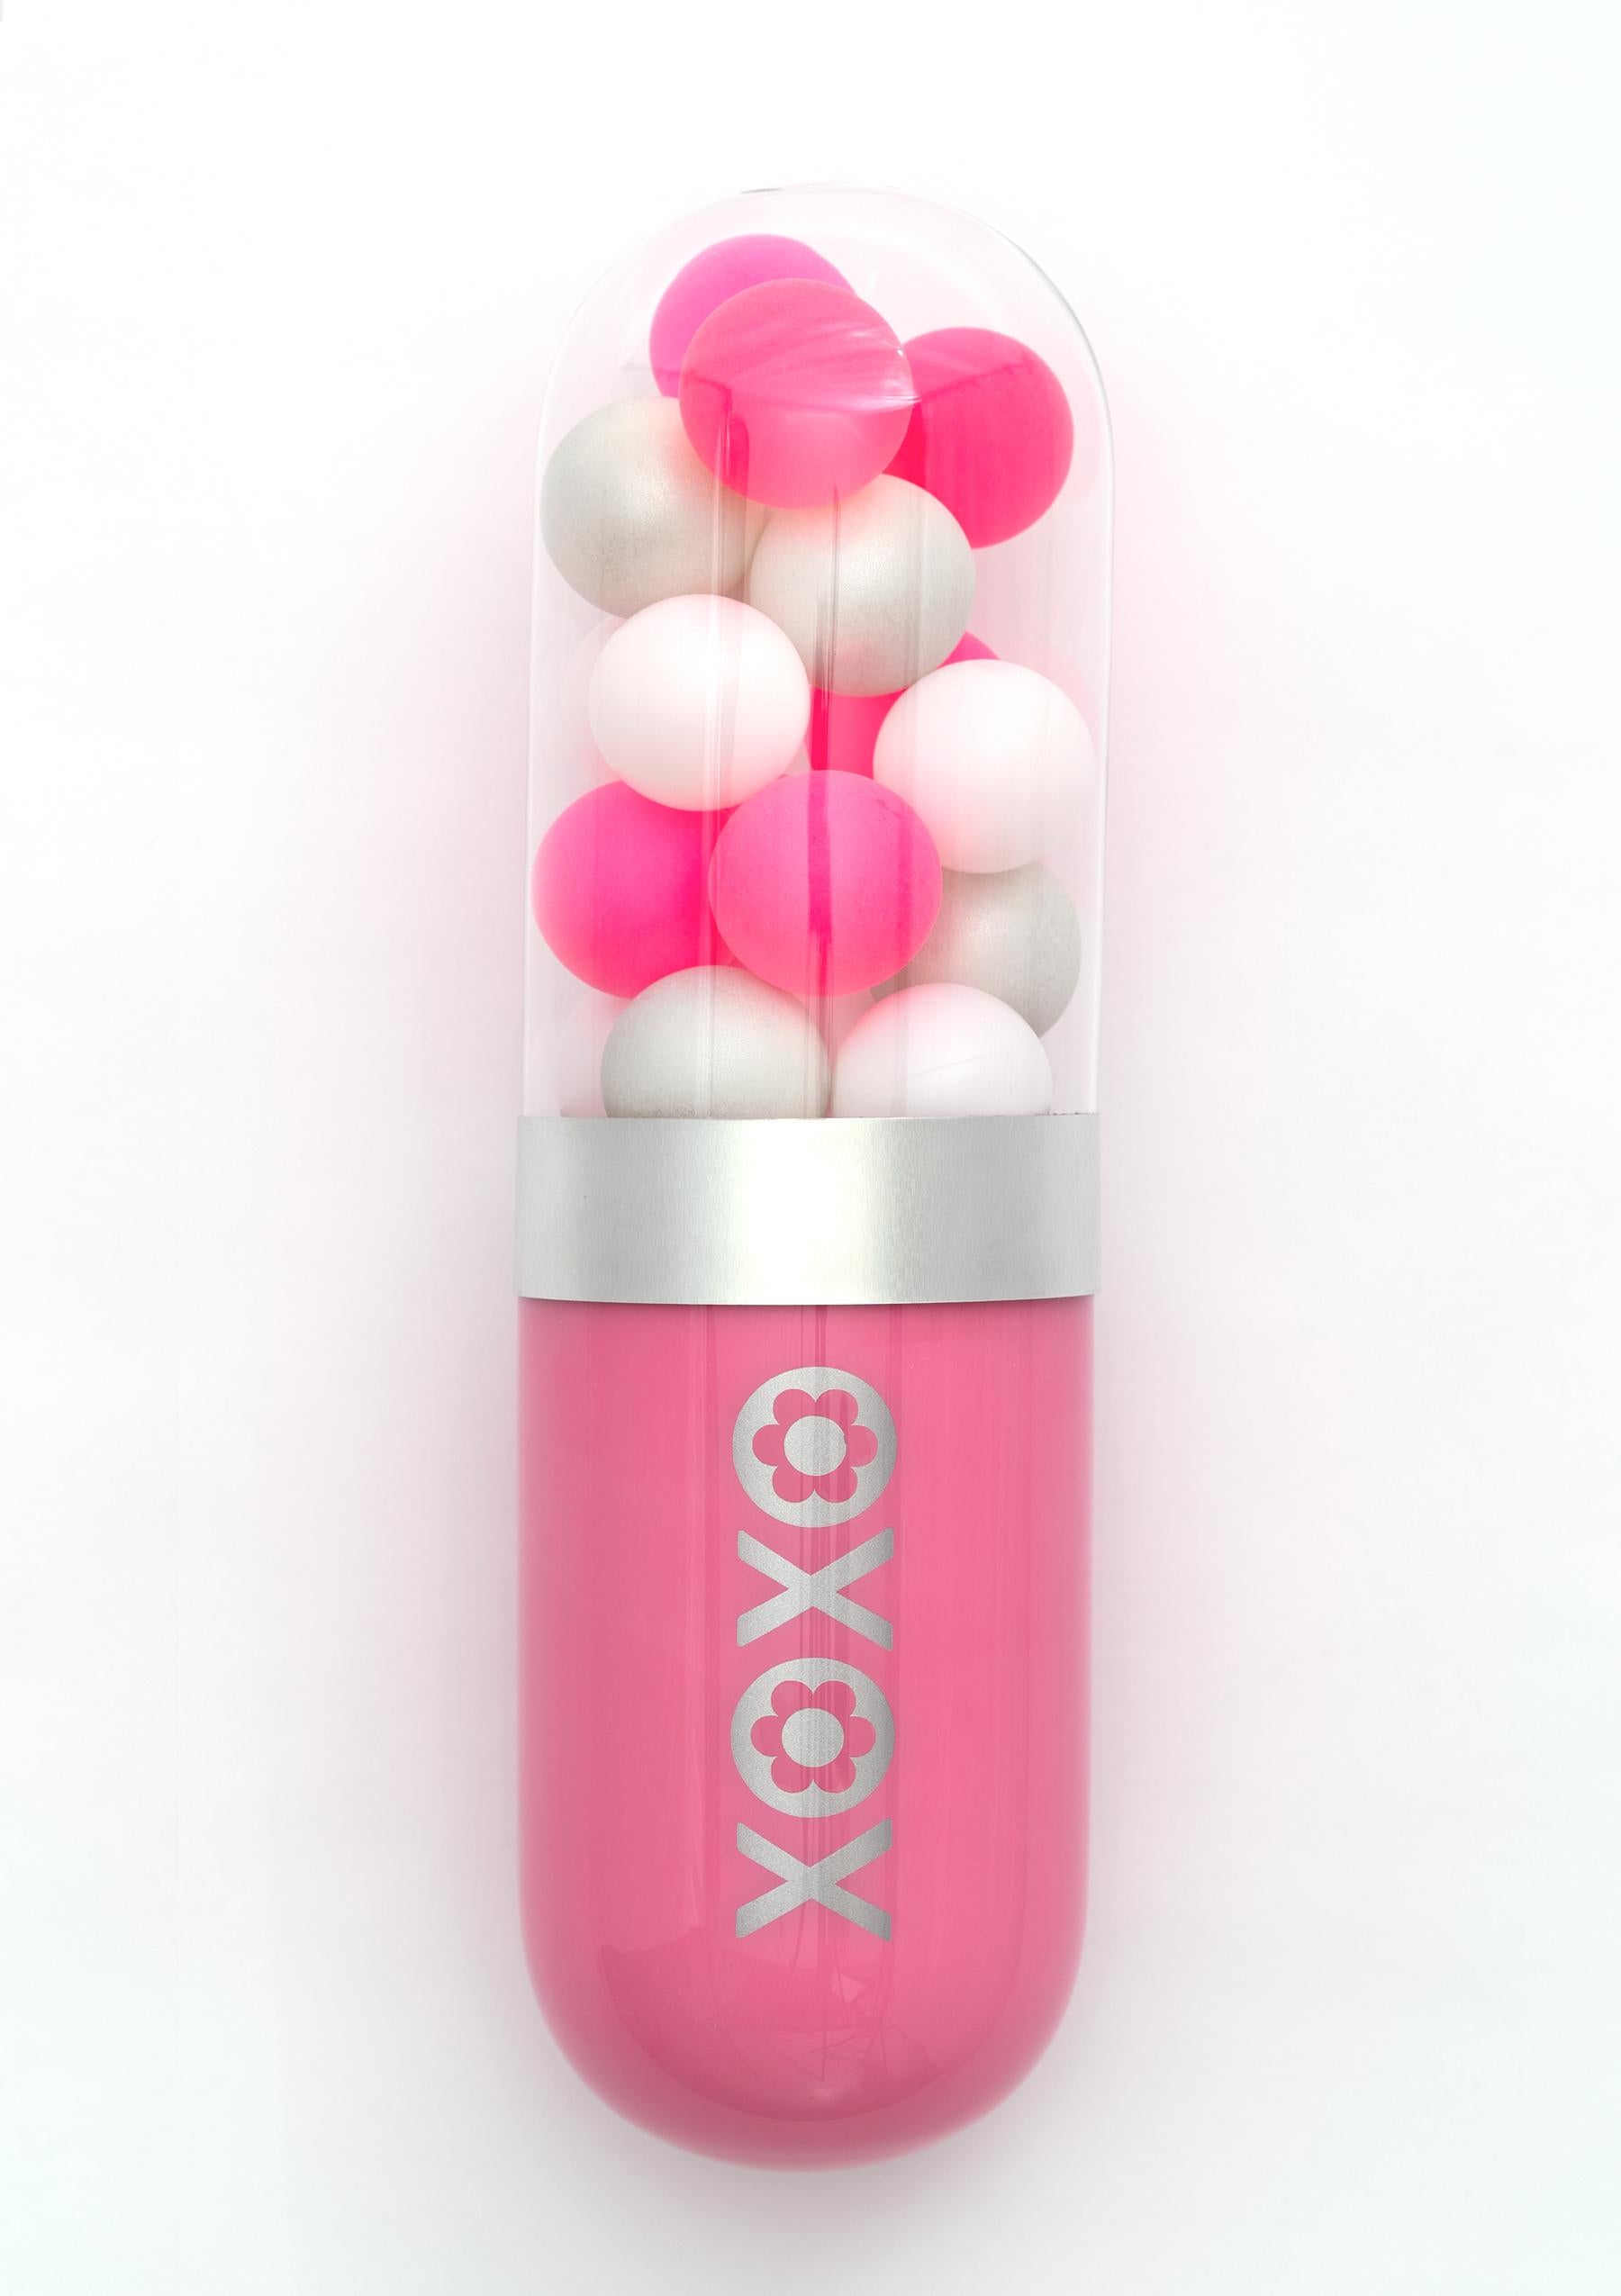 Edie Nadelhaft Still-Life Sculpture - "XOXO" (Hugs & Kisses) pink glass pill sculpture